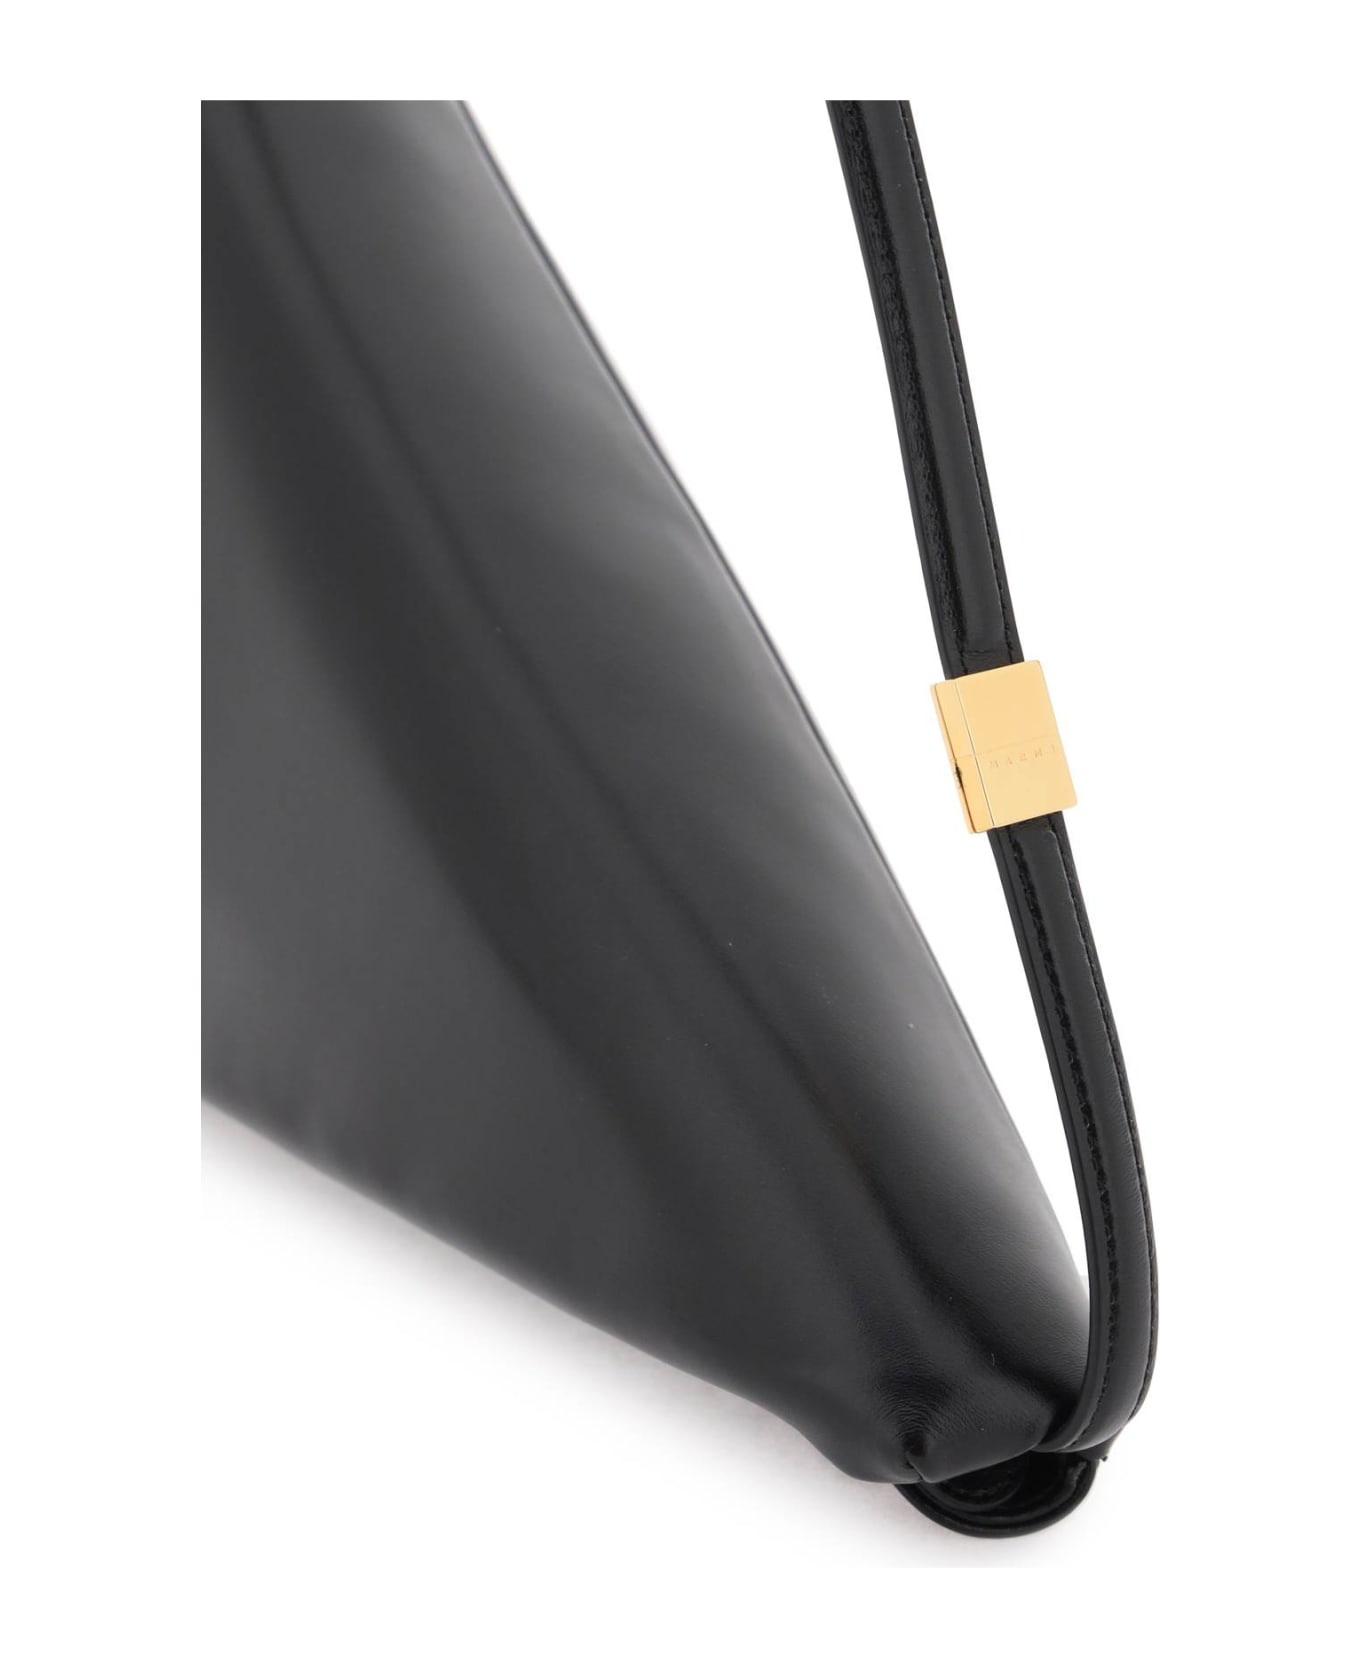 Marni 'prisma' Shoulder Bag - Black